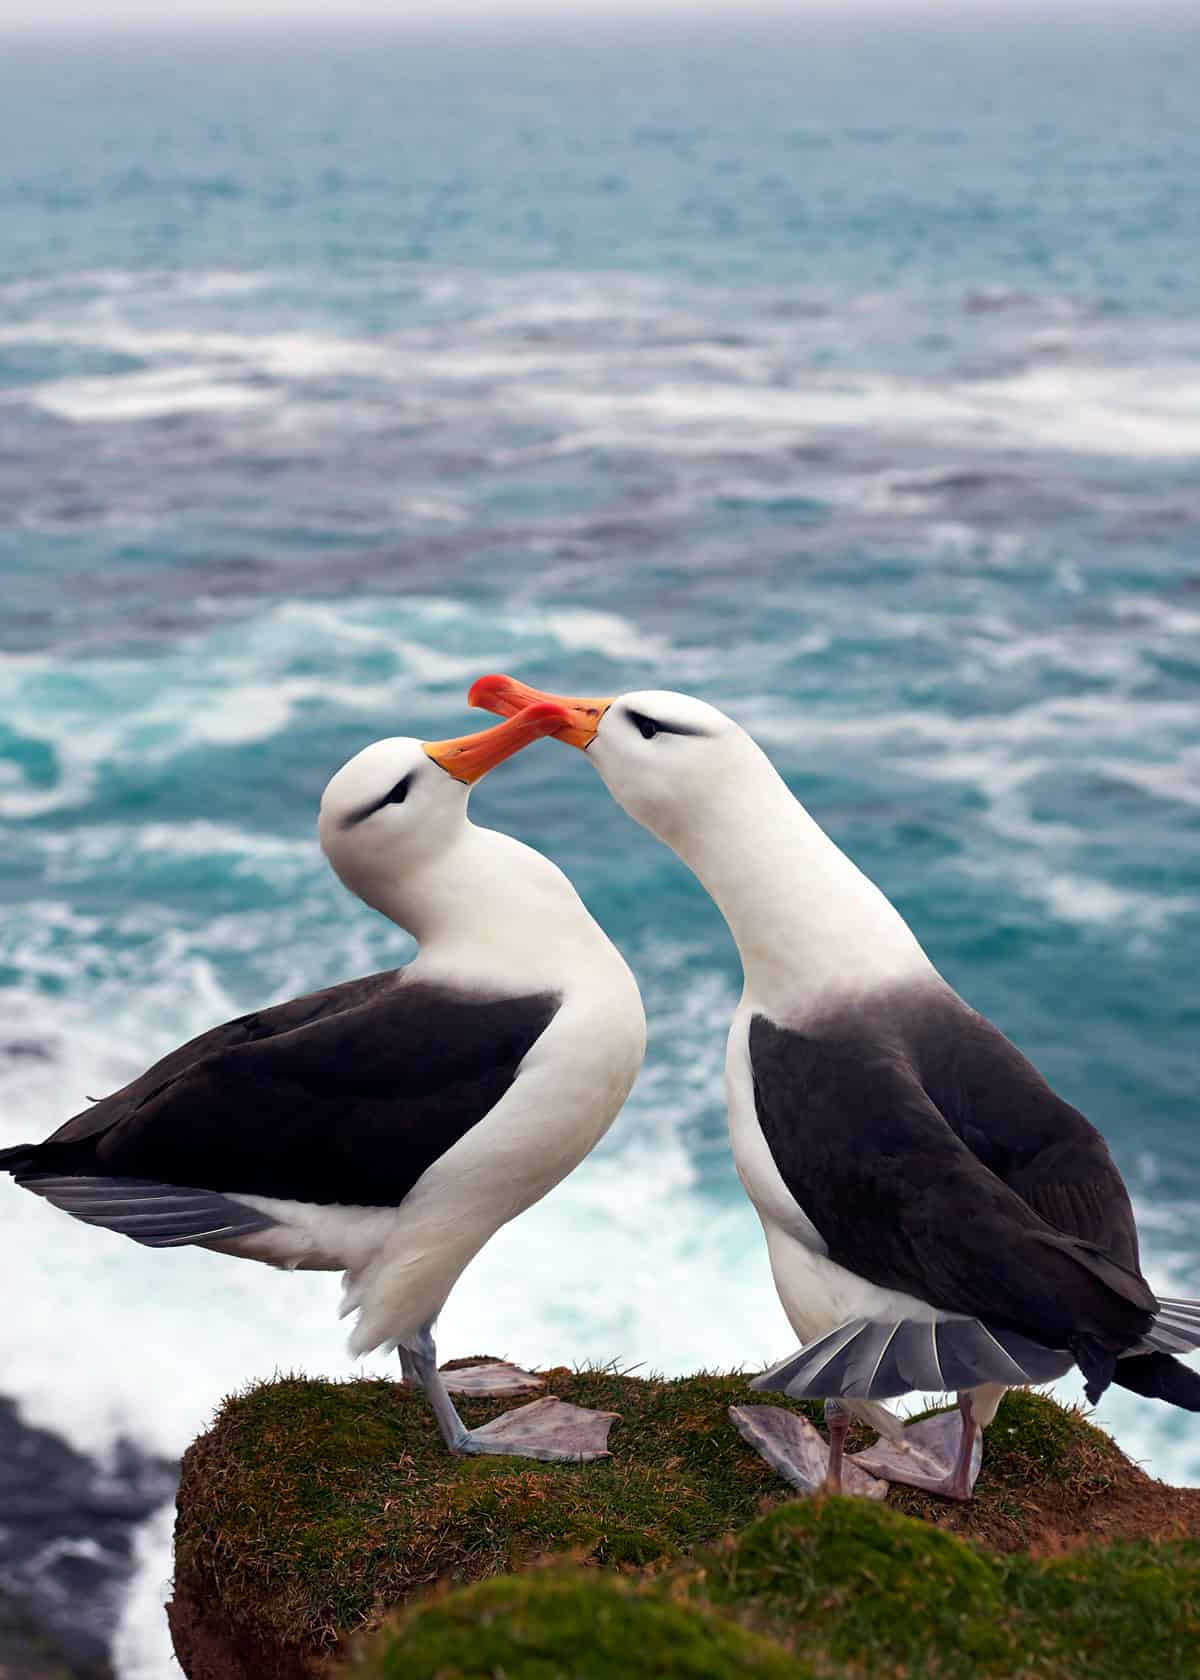 albatross mate for life